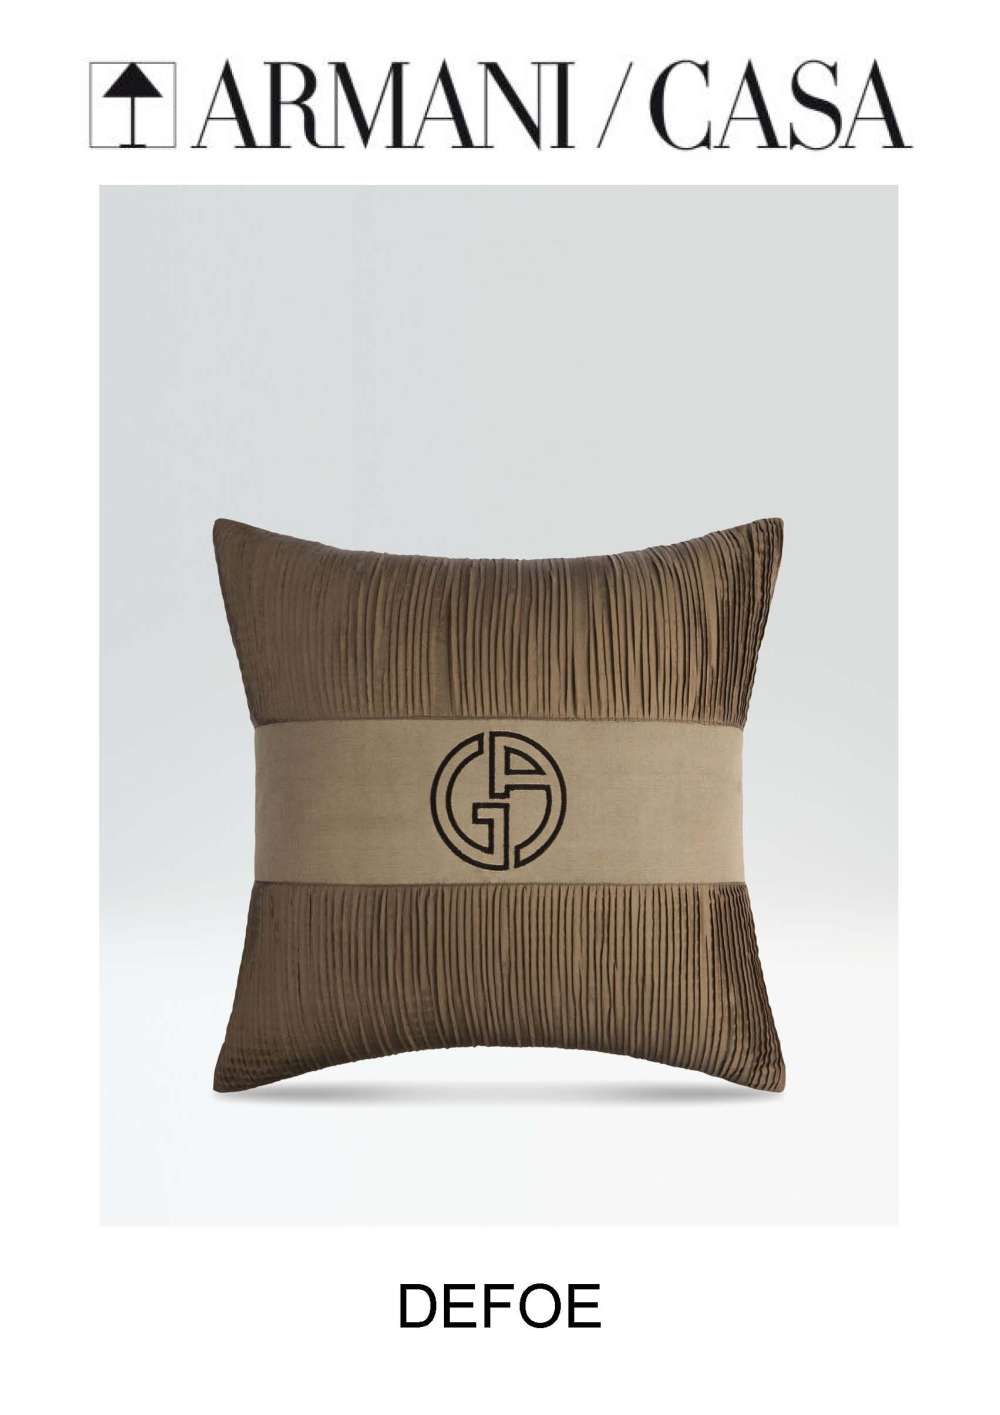 阿玛尼家具设计_阿玛尼 Cushions靠垫抱枕_页面_55.jpg